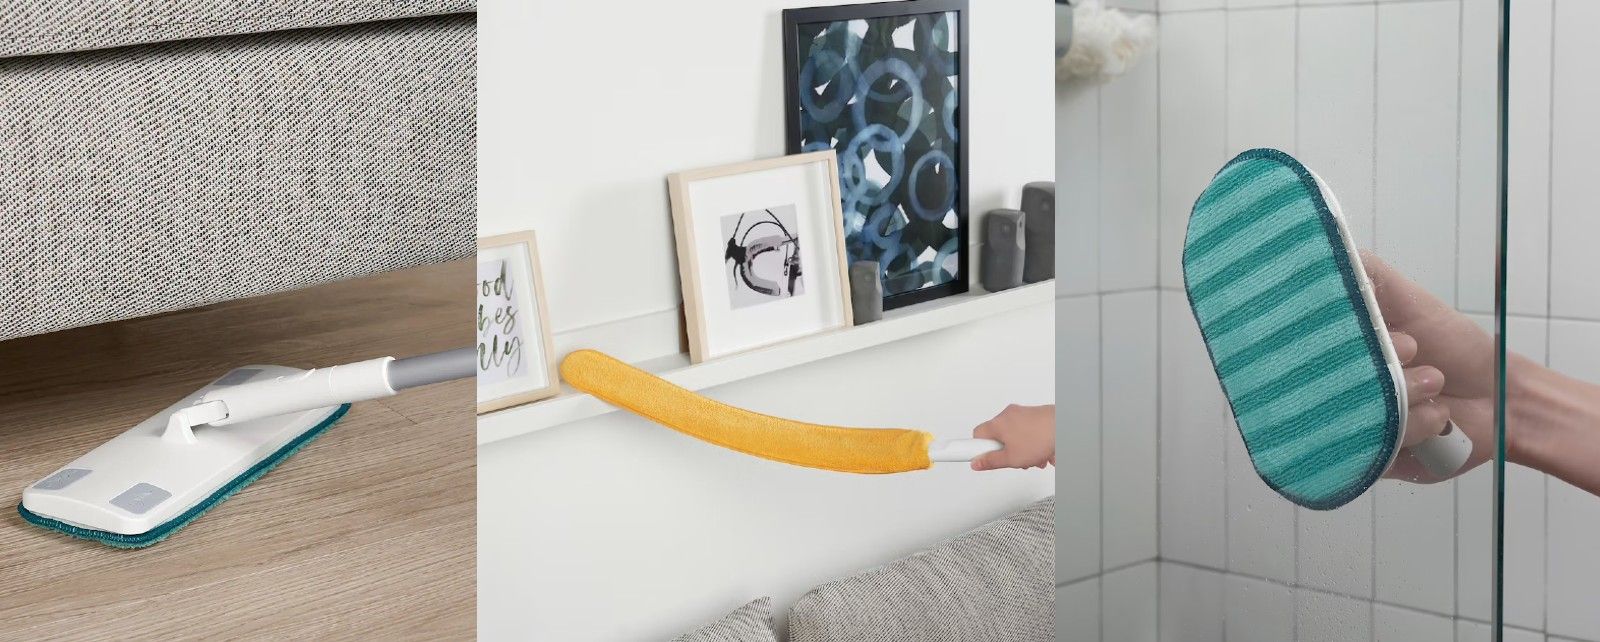 PEPPRIG IKEA | Ikea tiene el plumero perfecto para limpiar los radiadores  (y muchas cosas más)